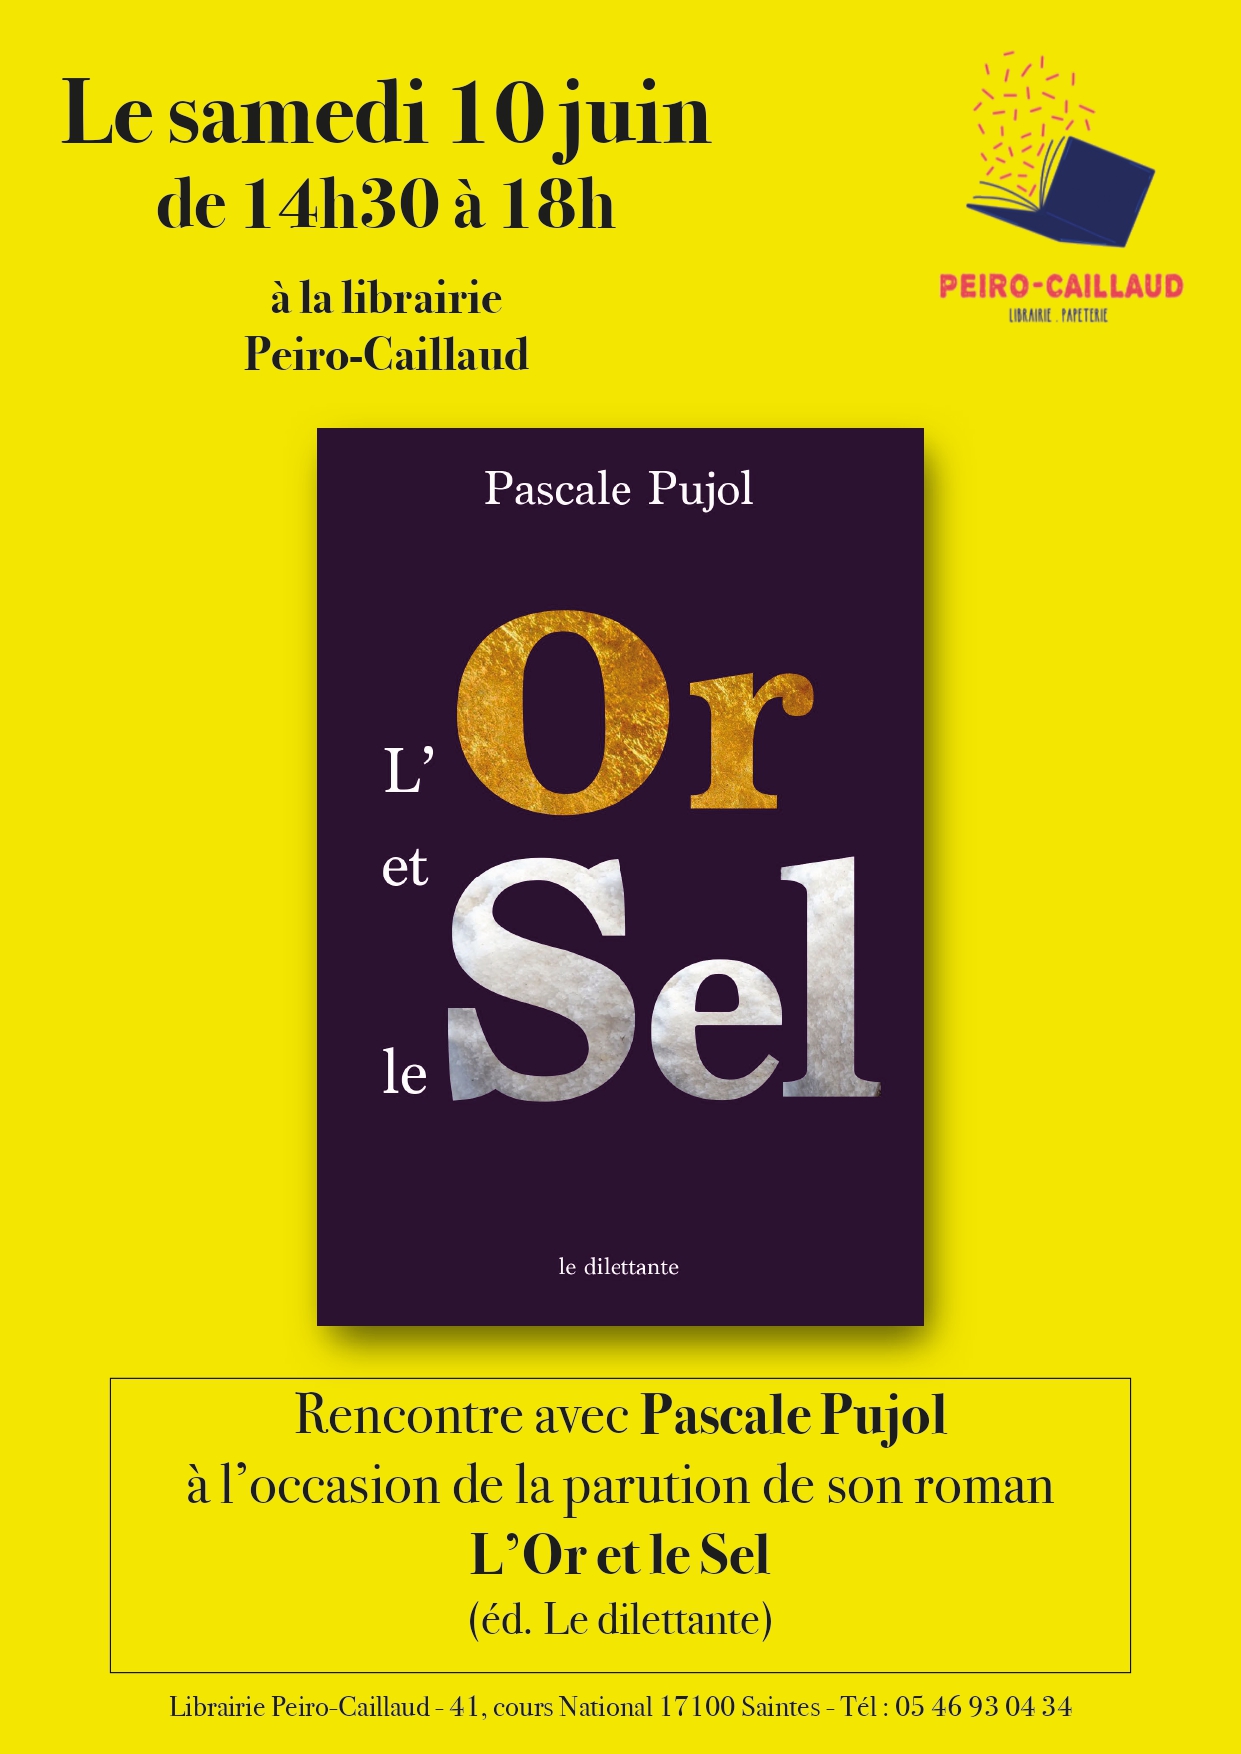 [ AGENDA ] Pascale Pujol sera le 10 juin à la librairie Peiro-Caillaud de Saintes pour la parution de son nouveau roman, L’Or et le Sel, au Dilettante